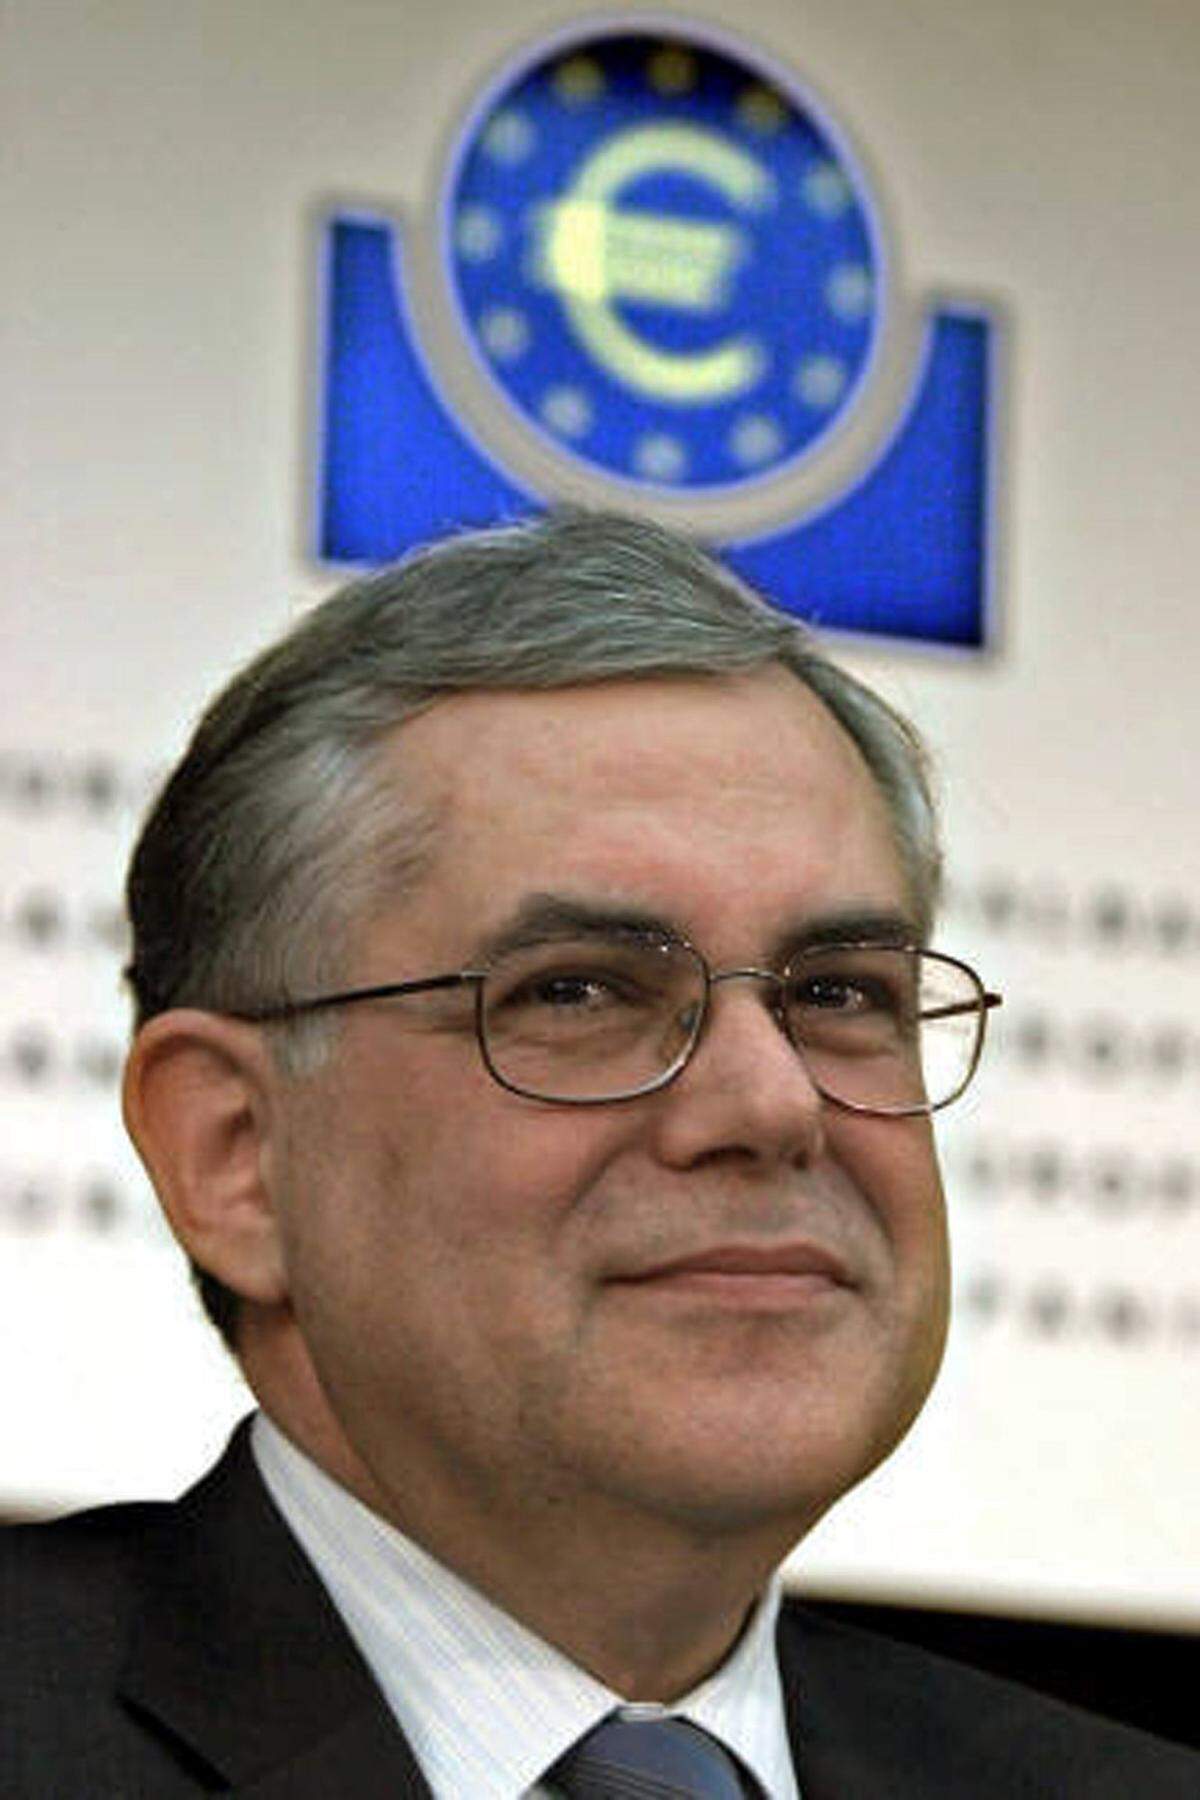 Papademos legte 2002 sein Amt als Notenbankchef nieder und wechselte als Vize-Präsident der EZB nach Frankfurt. Seine Erfahrung als Vertreter eines ärmeren Eurolandes sollte helfen, die osteuropäischen Neuzugänge in der EU auf die Einführung der Währung vorzubereiten.